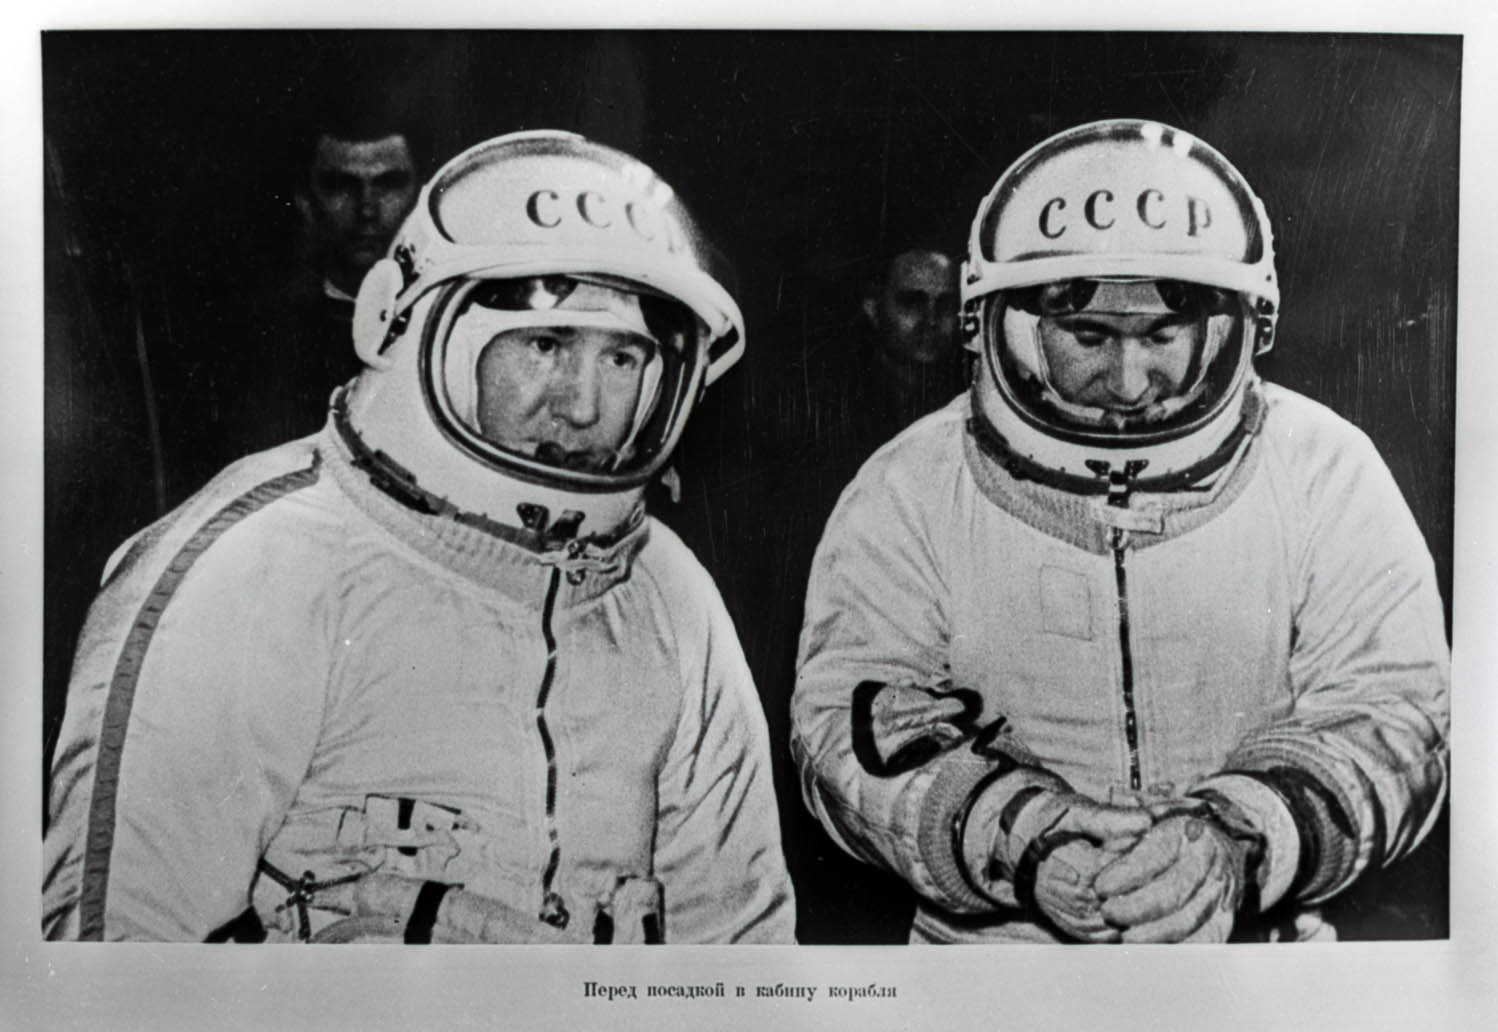 Роскосмос опубликовал бортовой журнал Леонова о первом выходе в открытый космос и полетные документы корабля «Восход-2» - 1